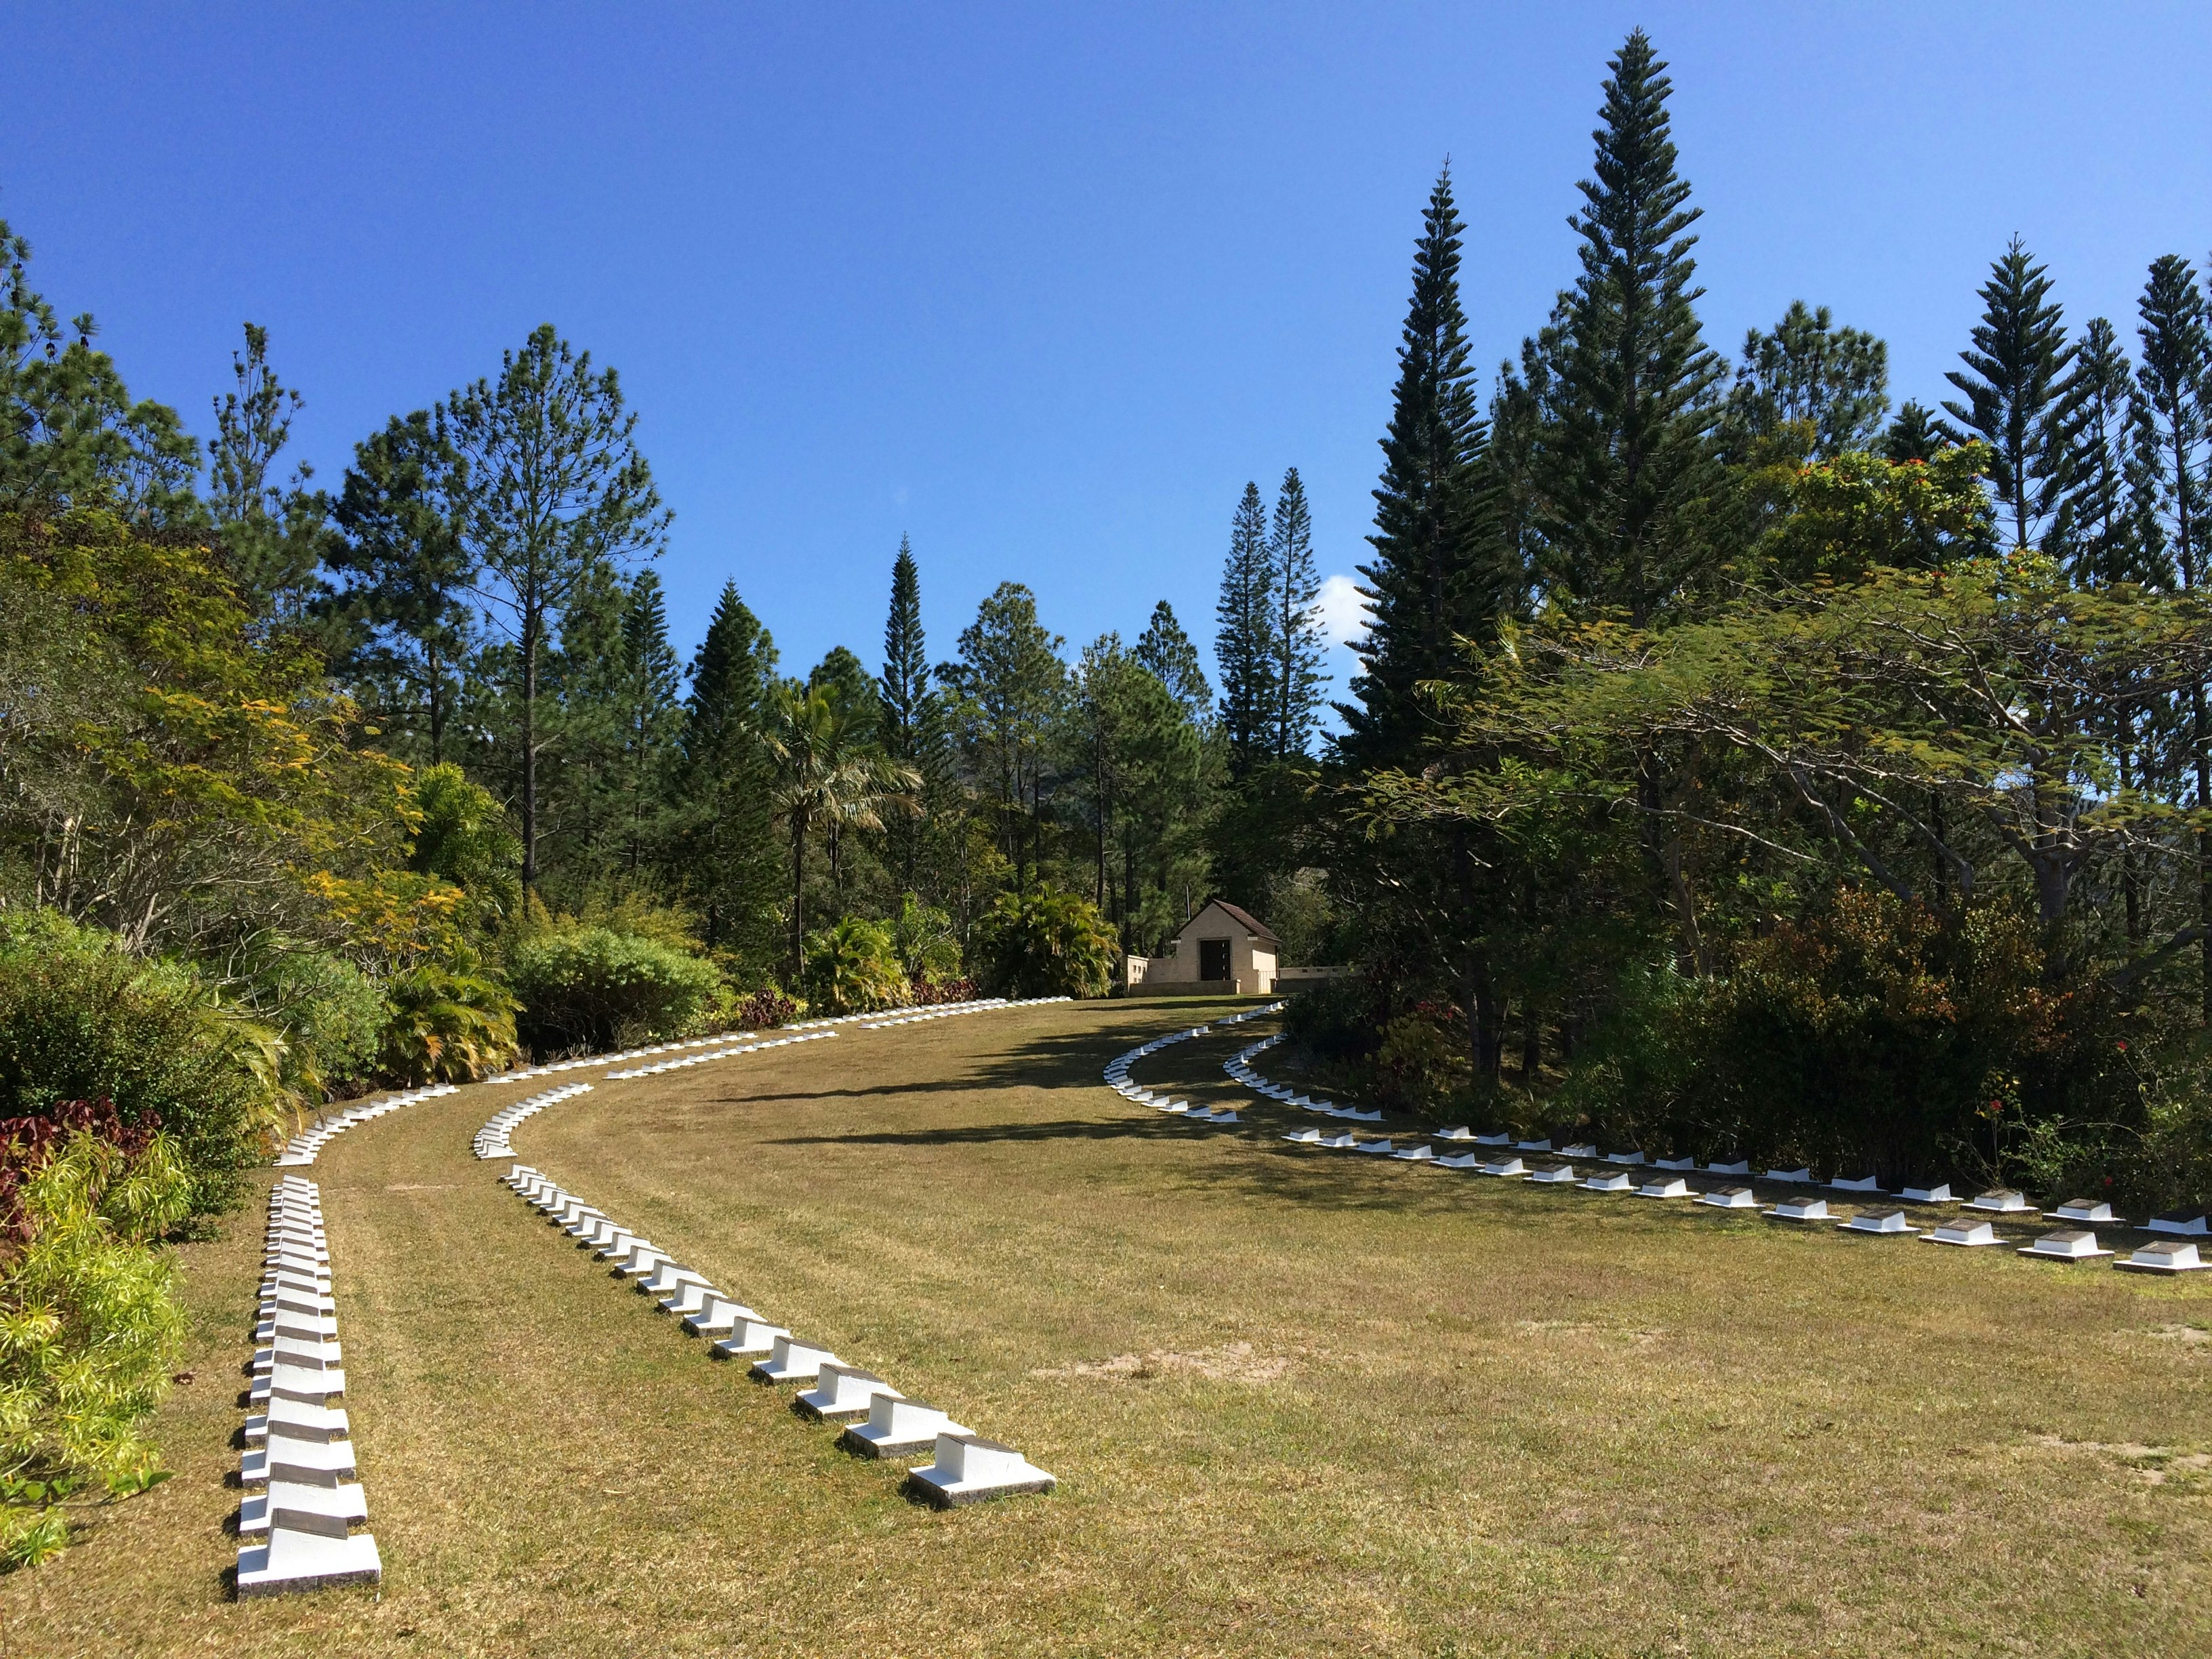 New Zealand War Cemetery